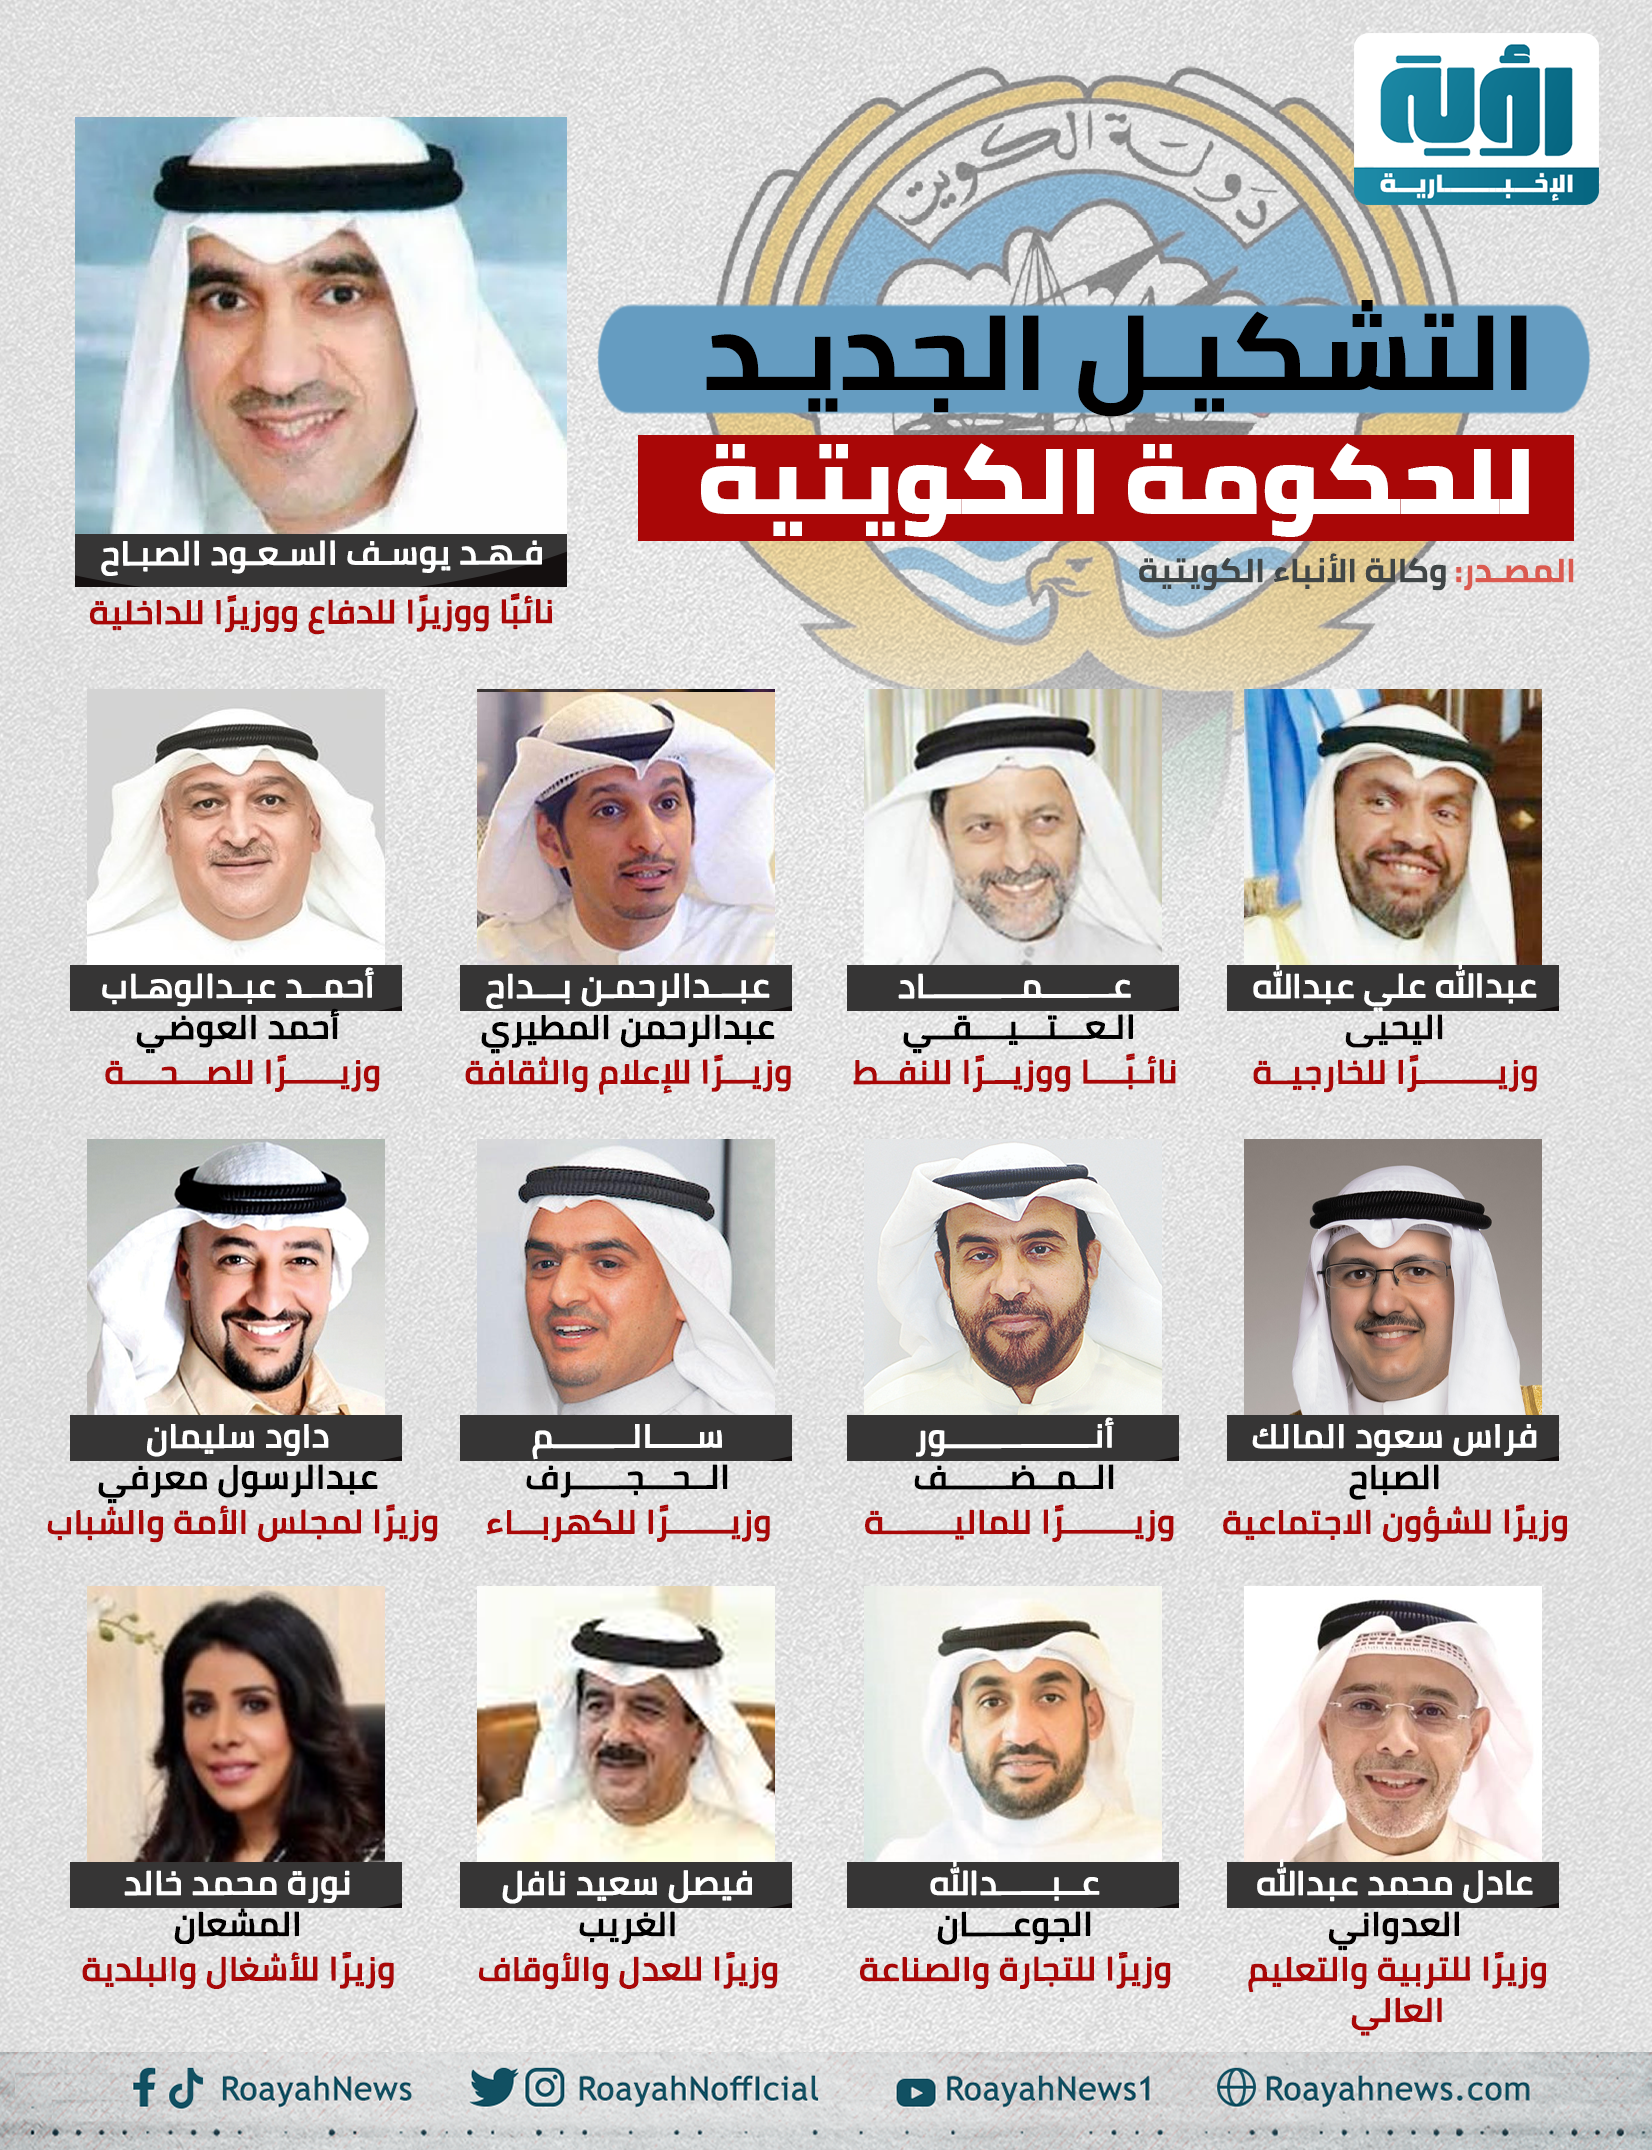 التشكيل الجديد للحكومة الكويتية